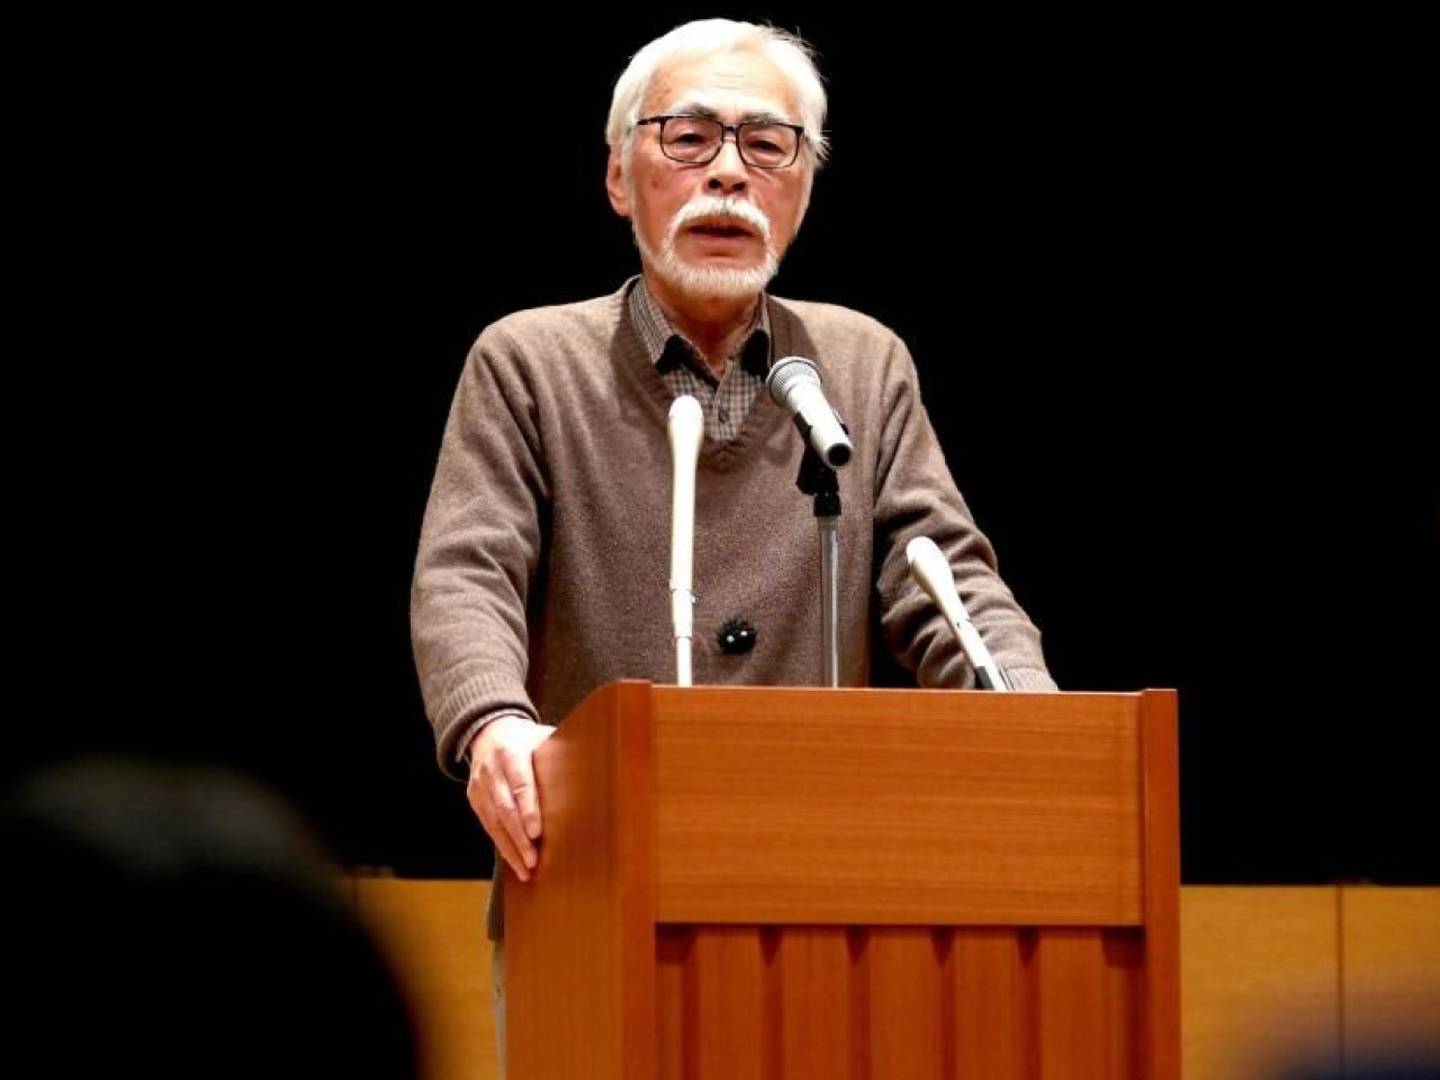 El método Miyazaki